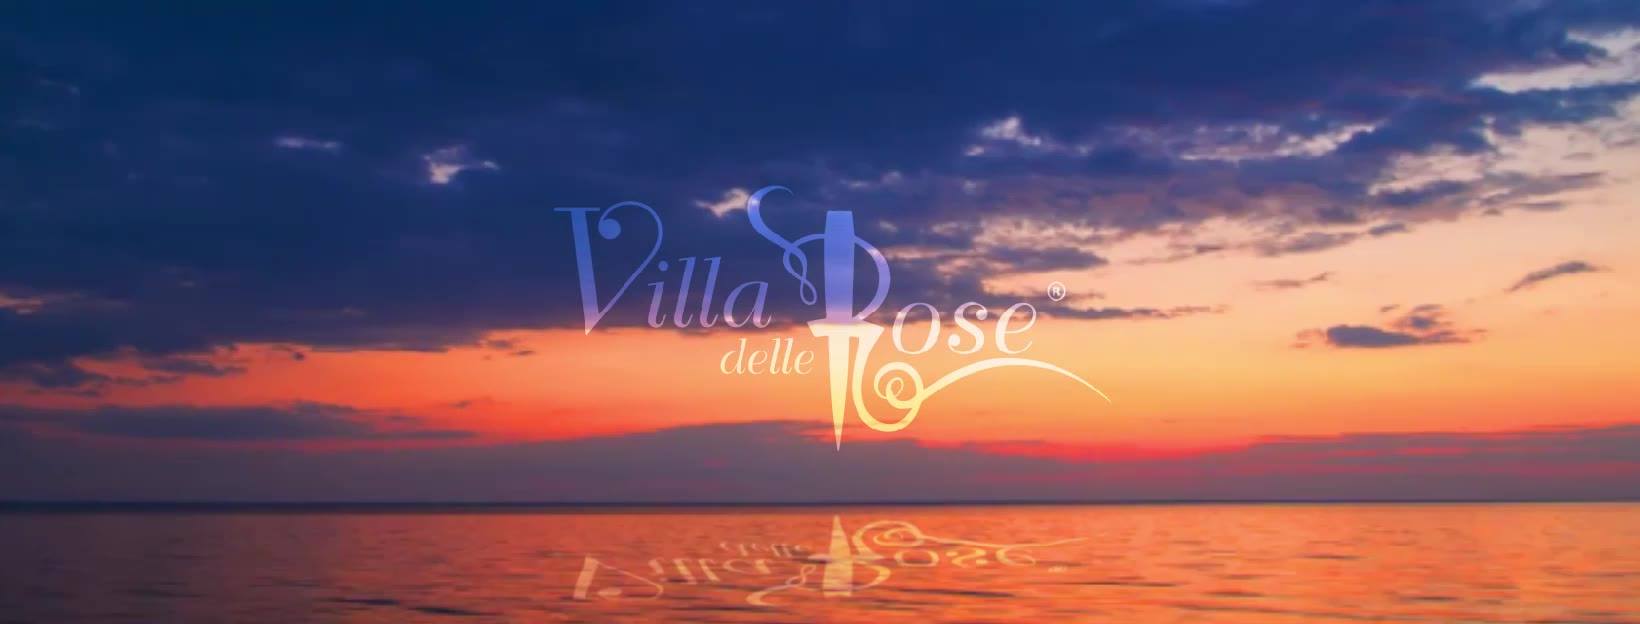 Inaugurazione estate 2019 discoteca Villa delle Rose Misano Adriatico